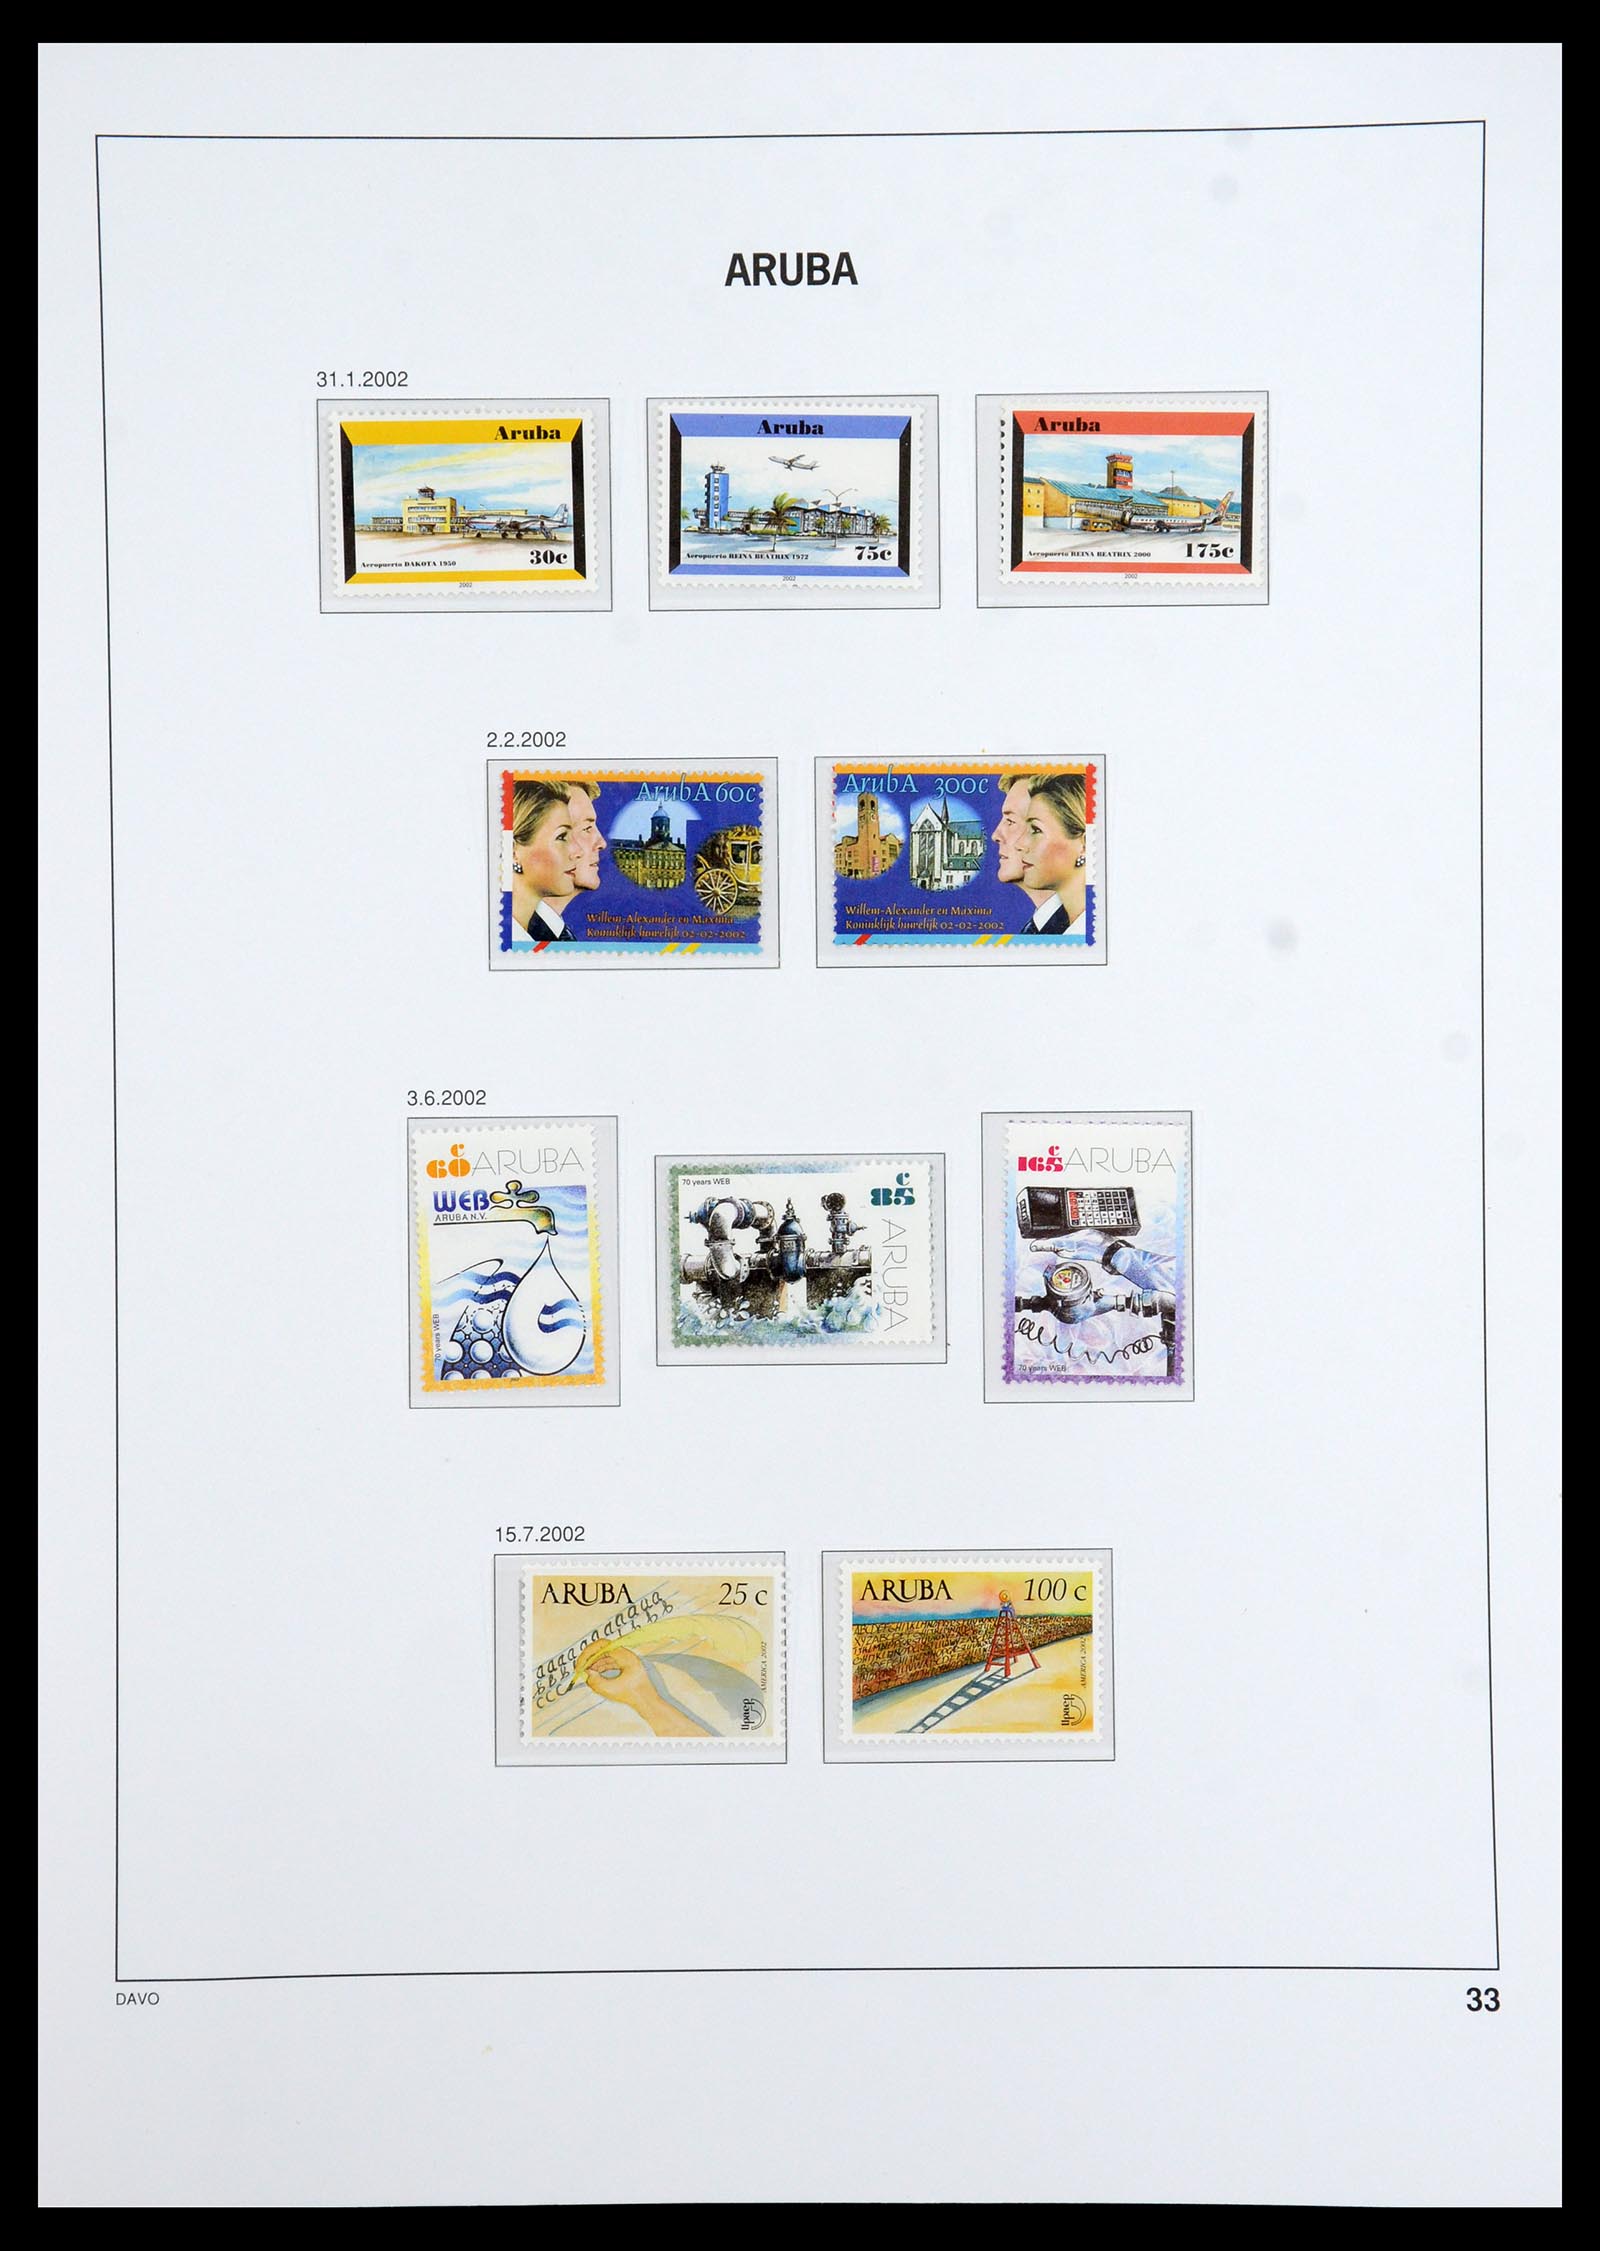 36369 035 - Stamp collection 36369 Aruba 1986-2009.